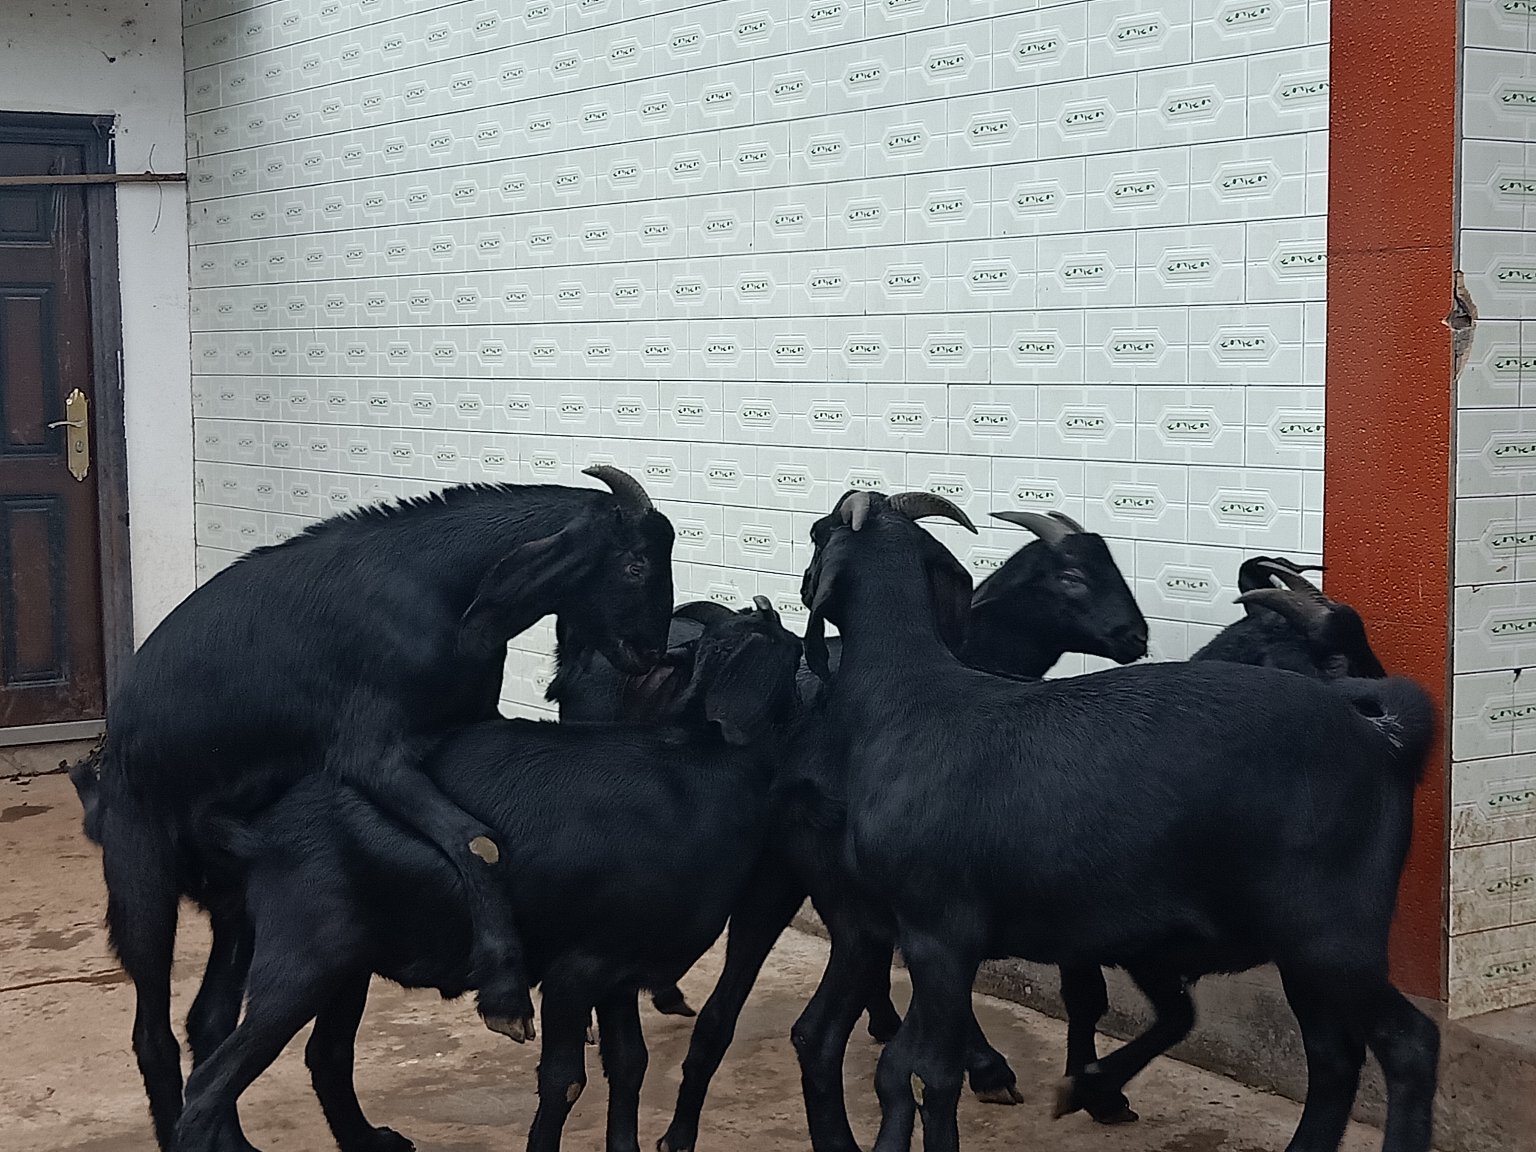 成都金堂努比亚黑山羊由成都川农业公司负责向全国推广!